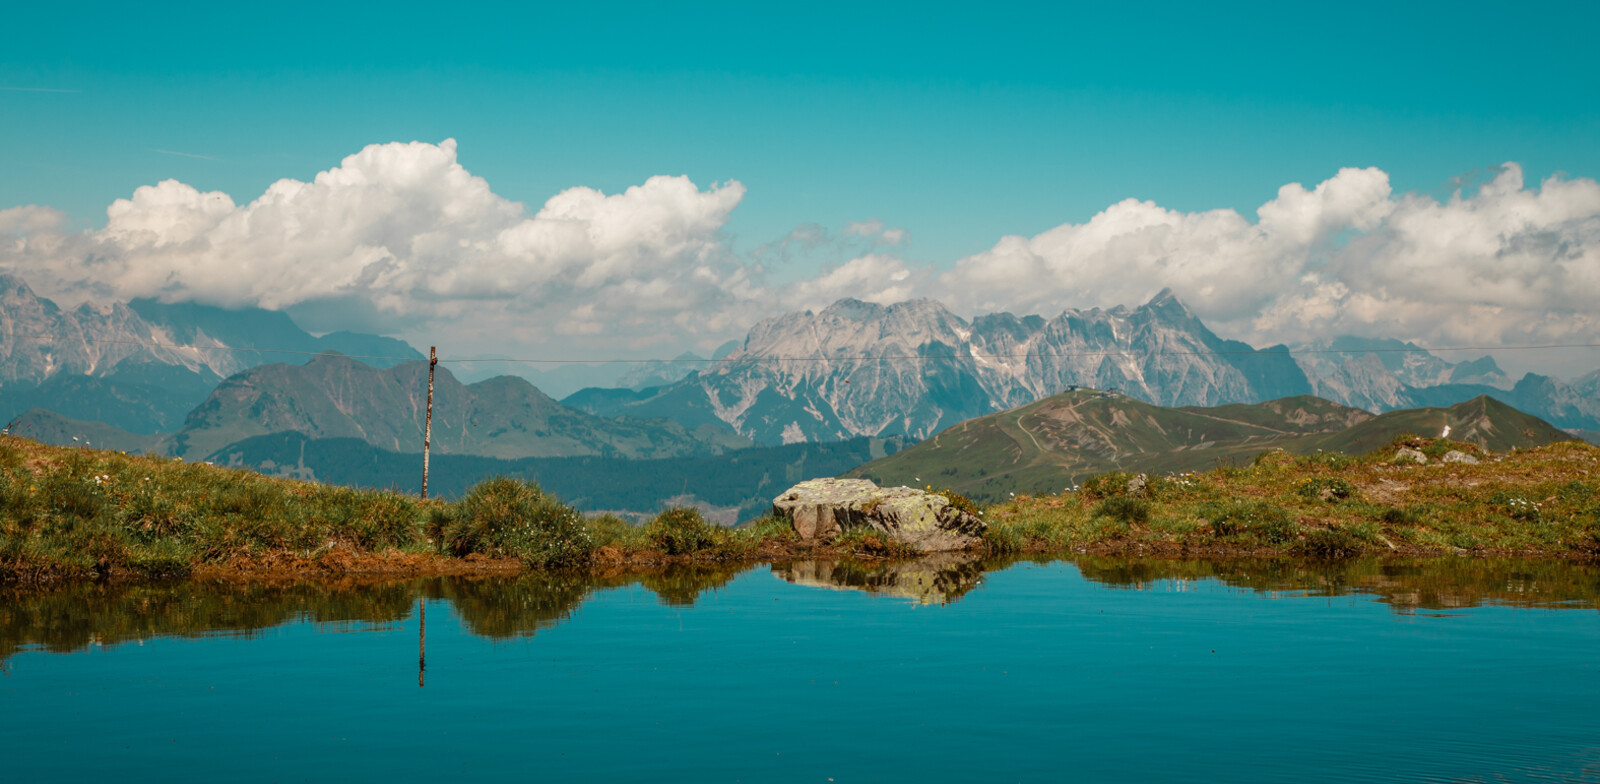 Reflexion in a quiet mountain lake | © Thorsten Günthert